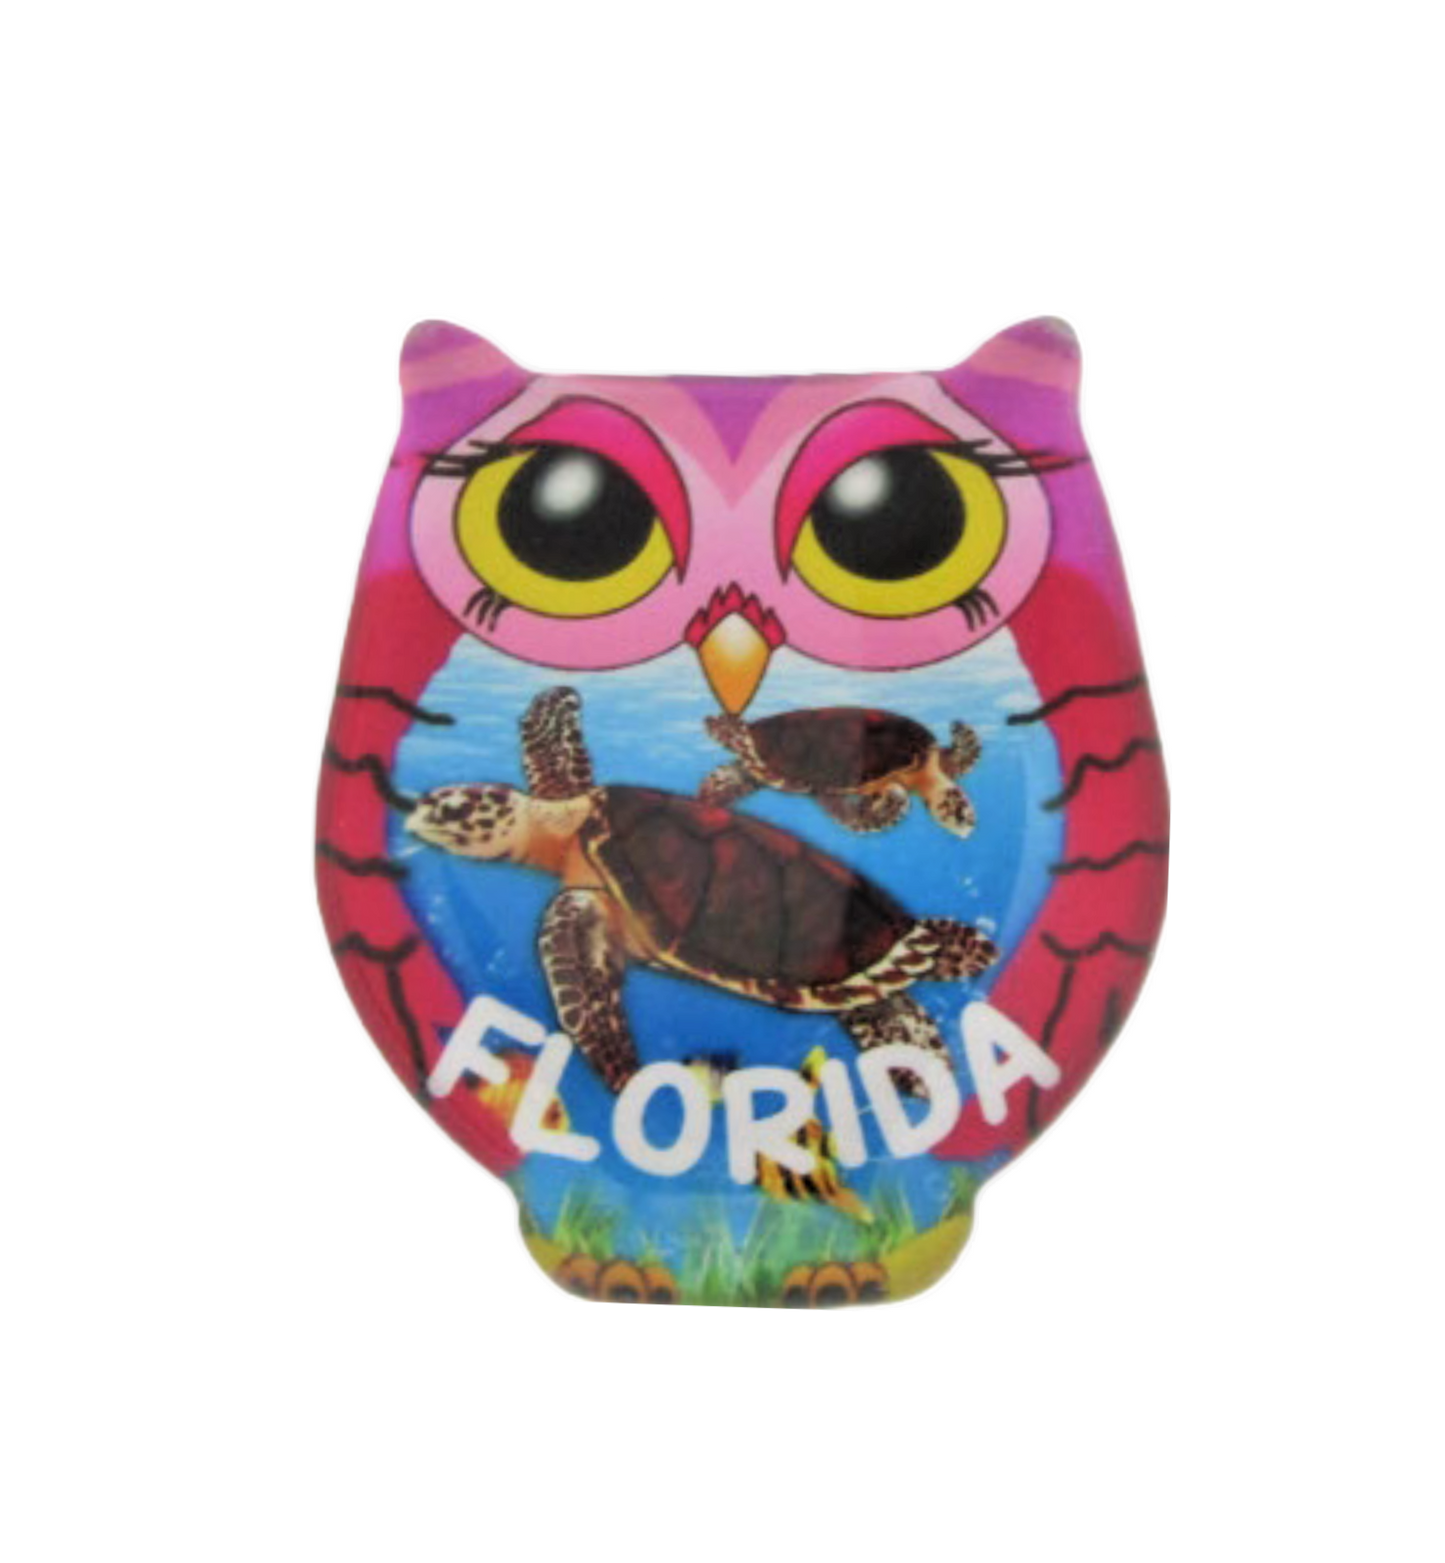 GM0102 FLORIDA PURPLE OWL TURTLES